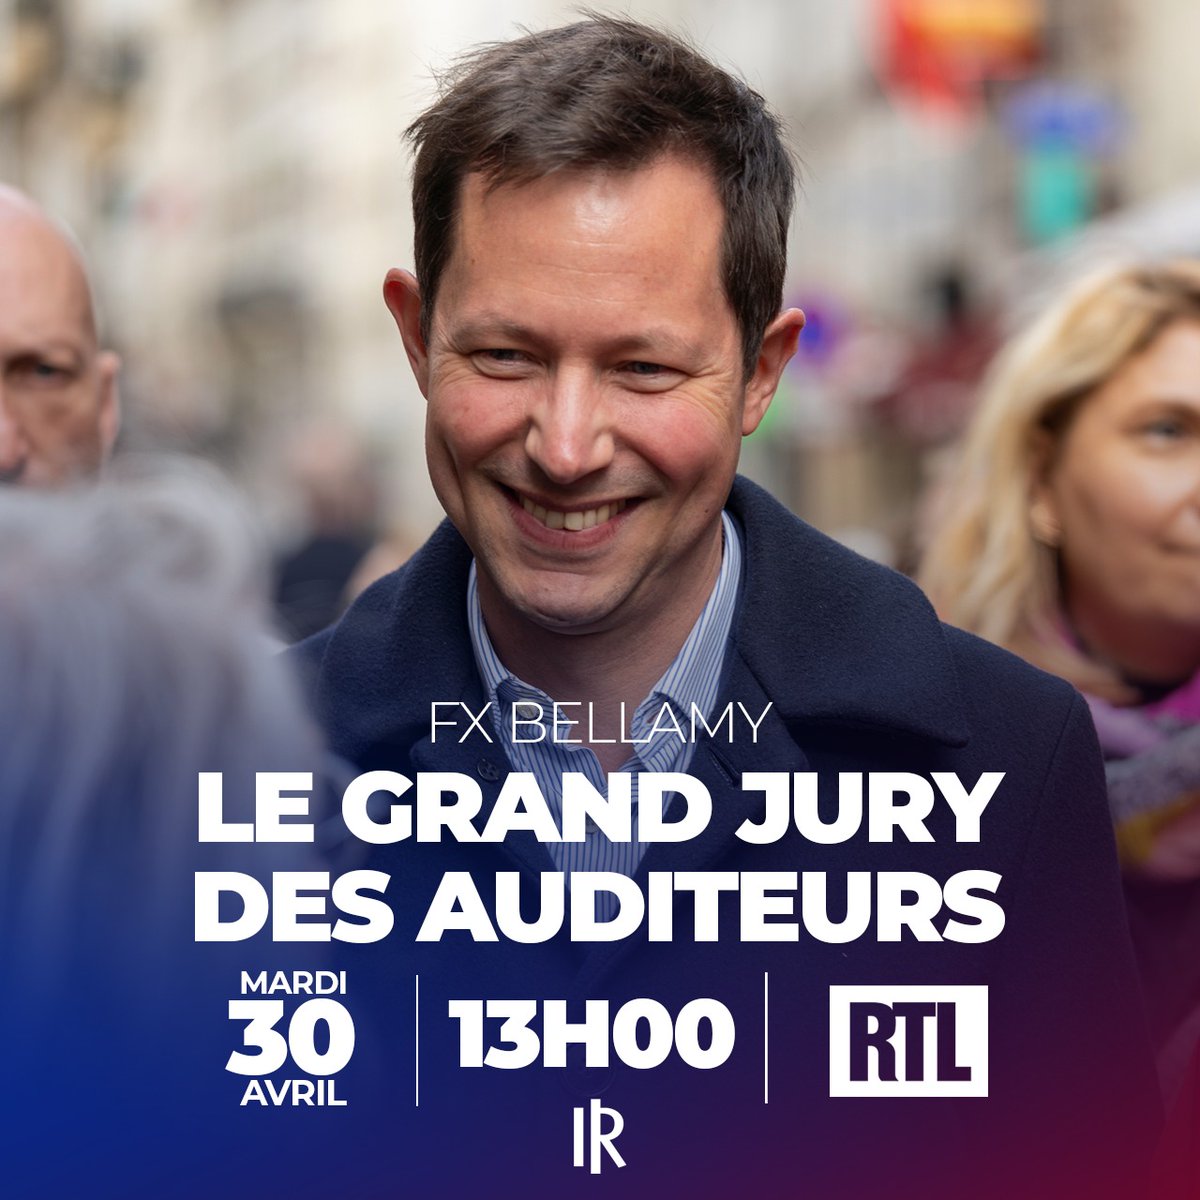 🎙️ Invité d'@ericbrunet sur #RTL pour Le Grand Jury Des Auditeurs. À suivre en direct à partir de 13h sur @RTLFrance